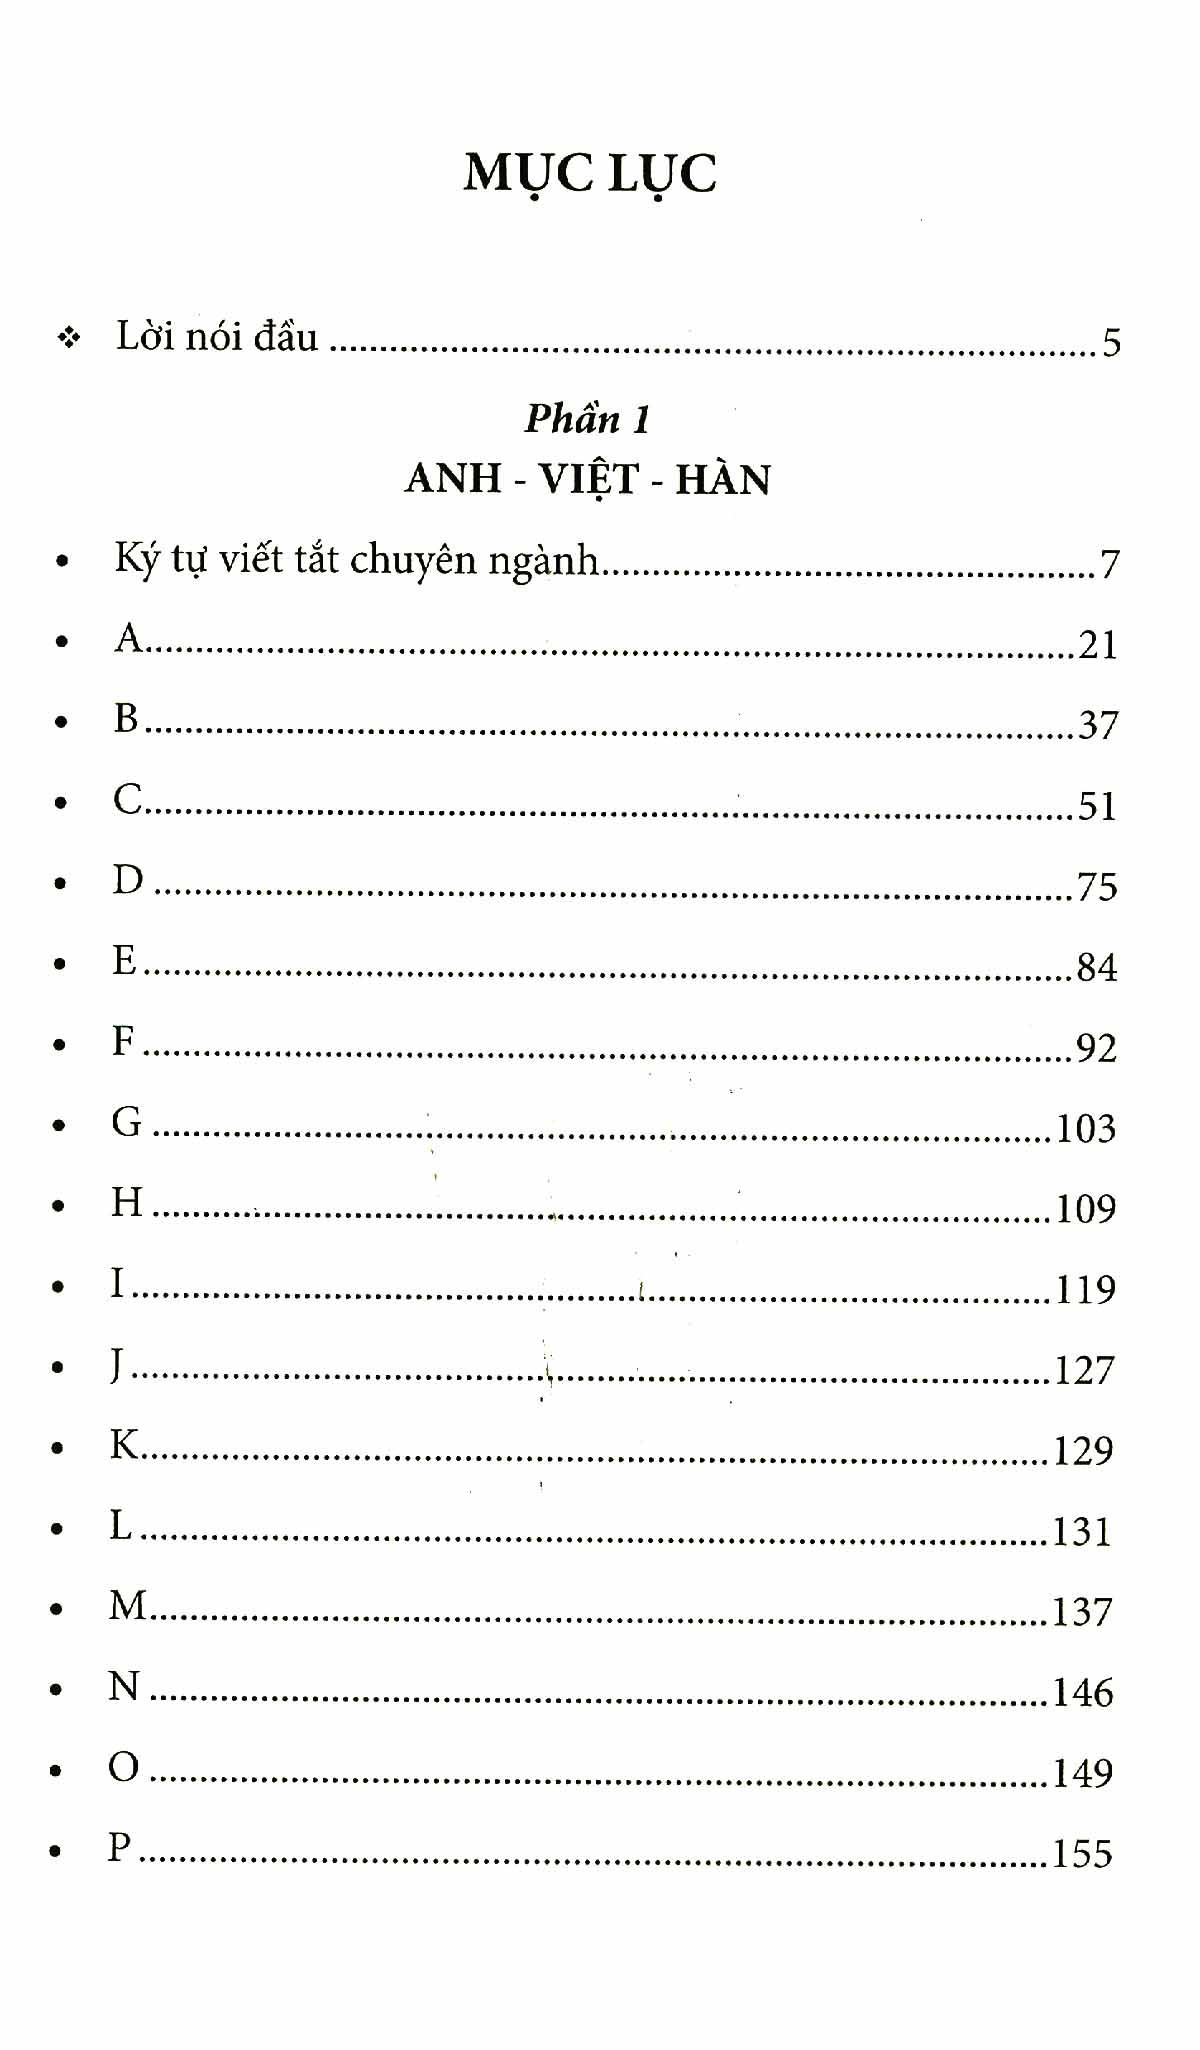 6000 Từ Vựng Chuyên Ngành Du Lịch-Khách Sạn-Nhà Hàng Anh-Việt-Hàn PDF